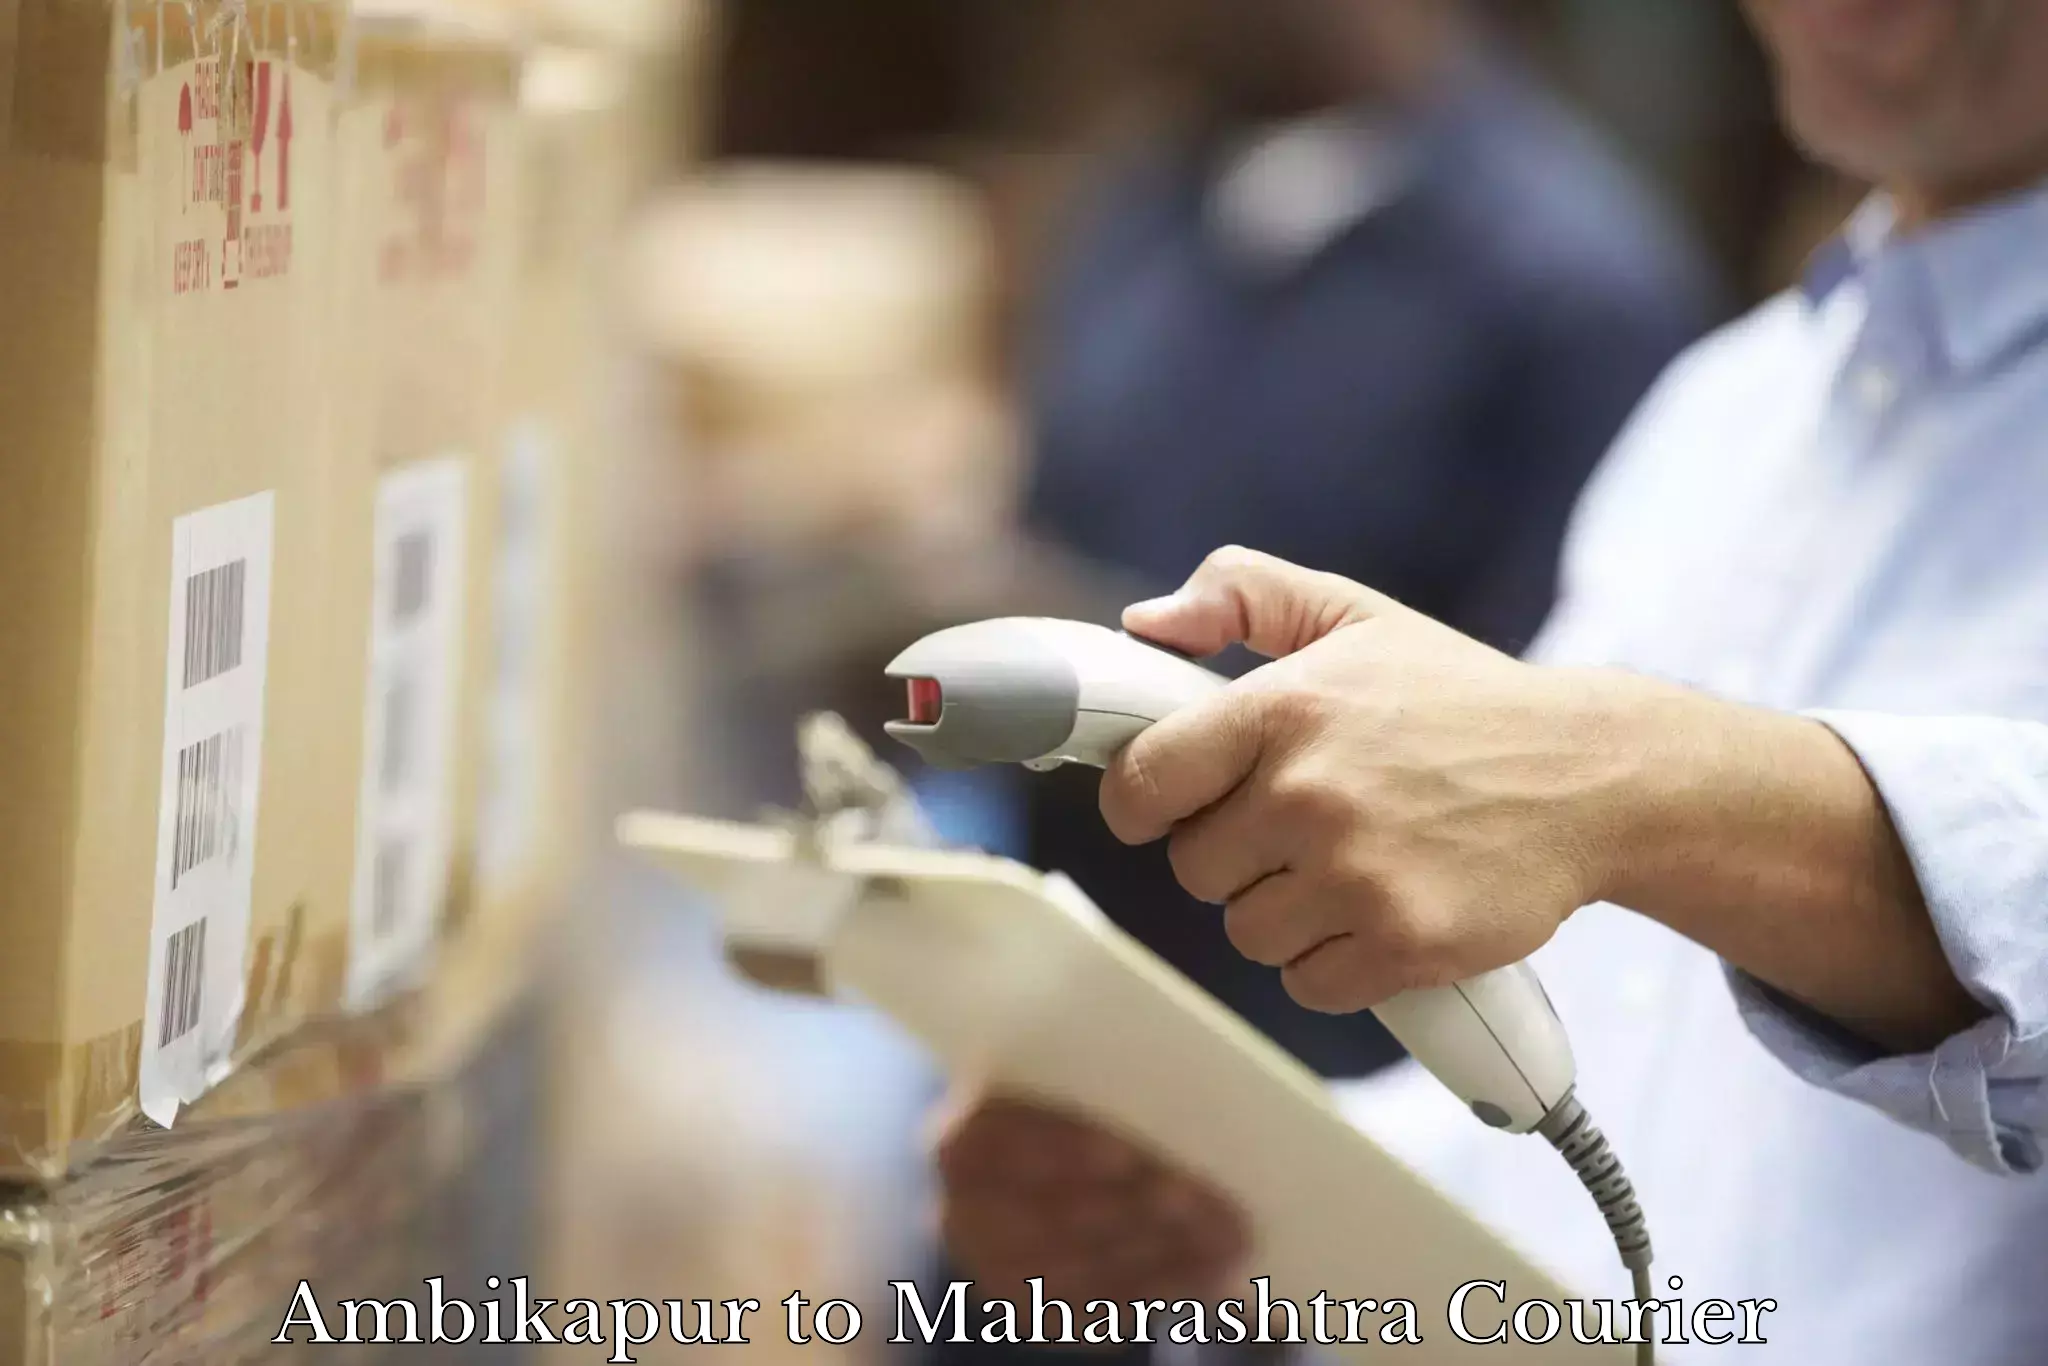 High-capacity parcel service Ambikapur to Maharashtra